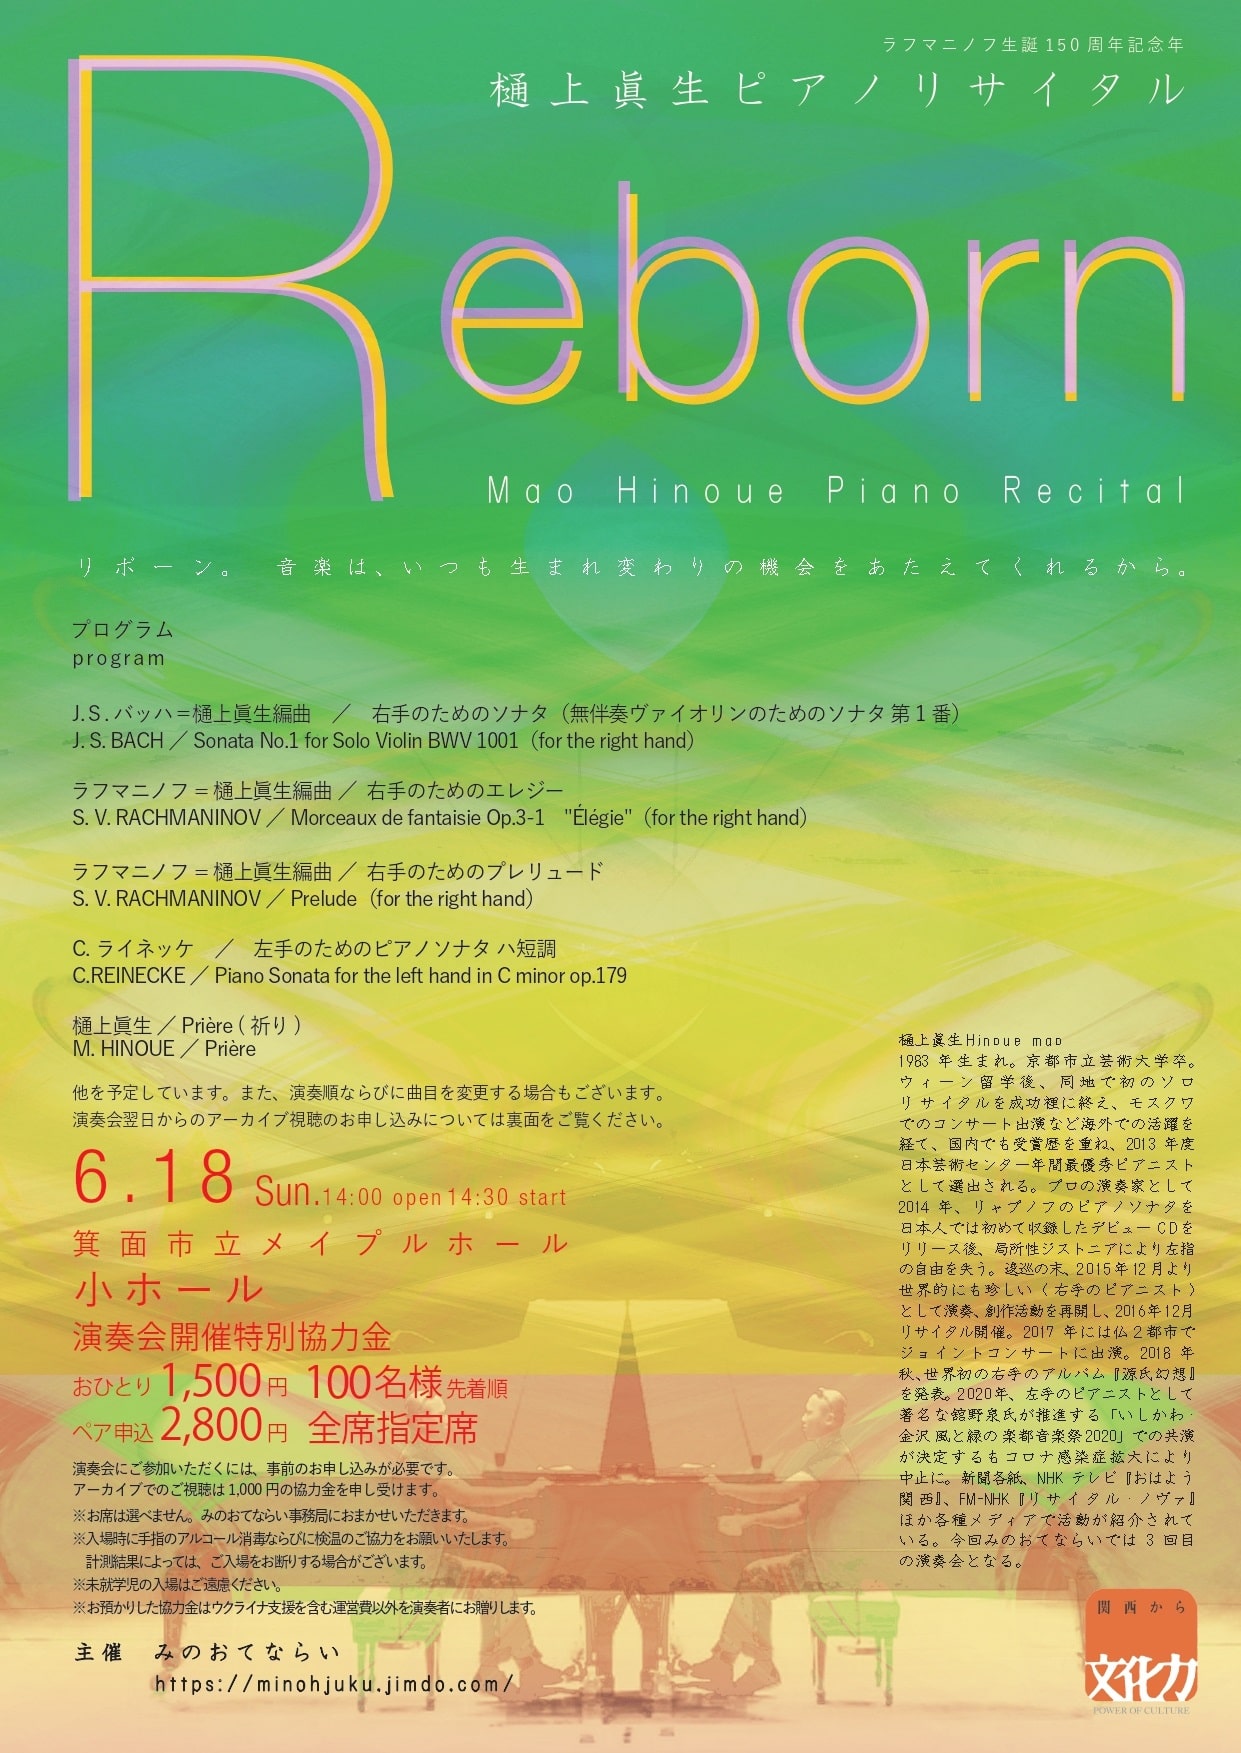 『Reborn』樋上眞生ピアノリサイタルフライヤー